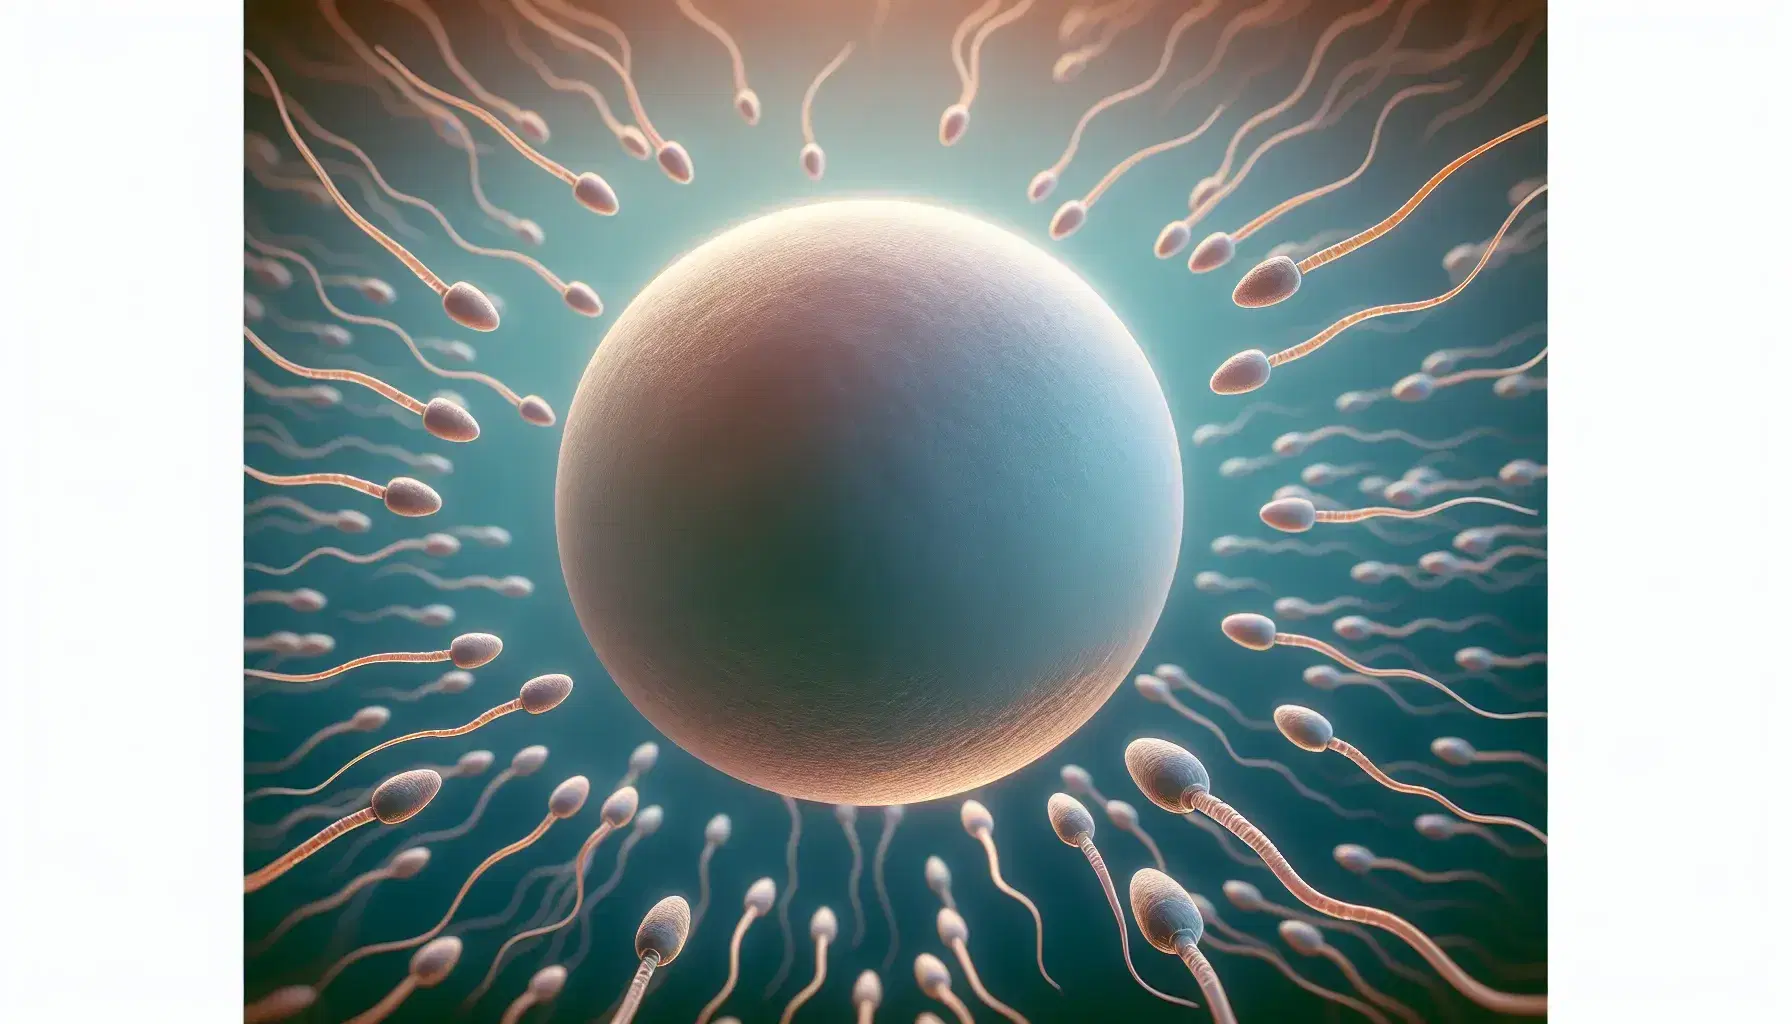 Óvulo humano rodeado de espermatozoides en proceso de fecundación, destacando la gran esfera central y las colas curvadas de los espermatozoides en un fondo azul gradiente.